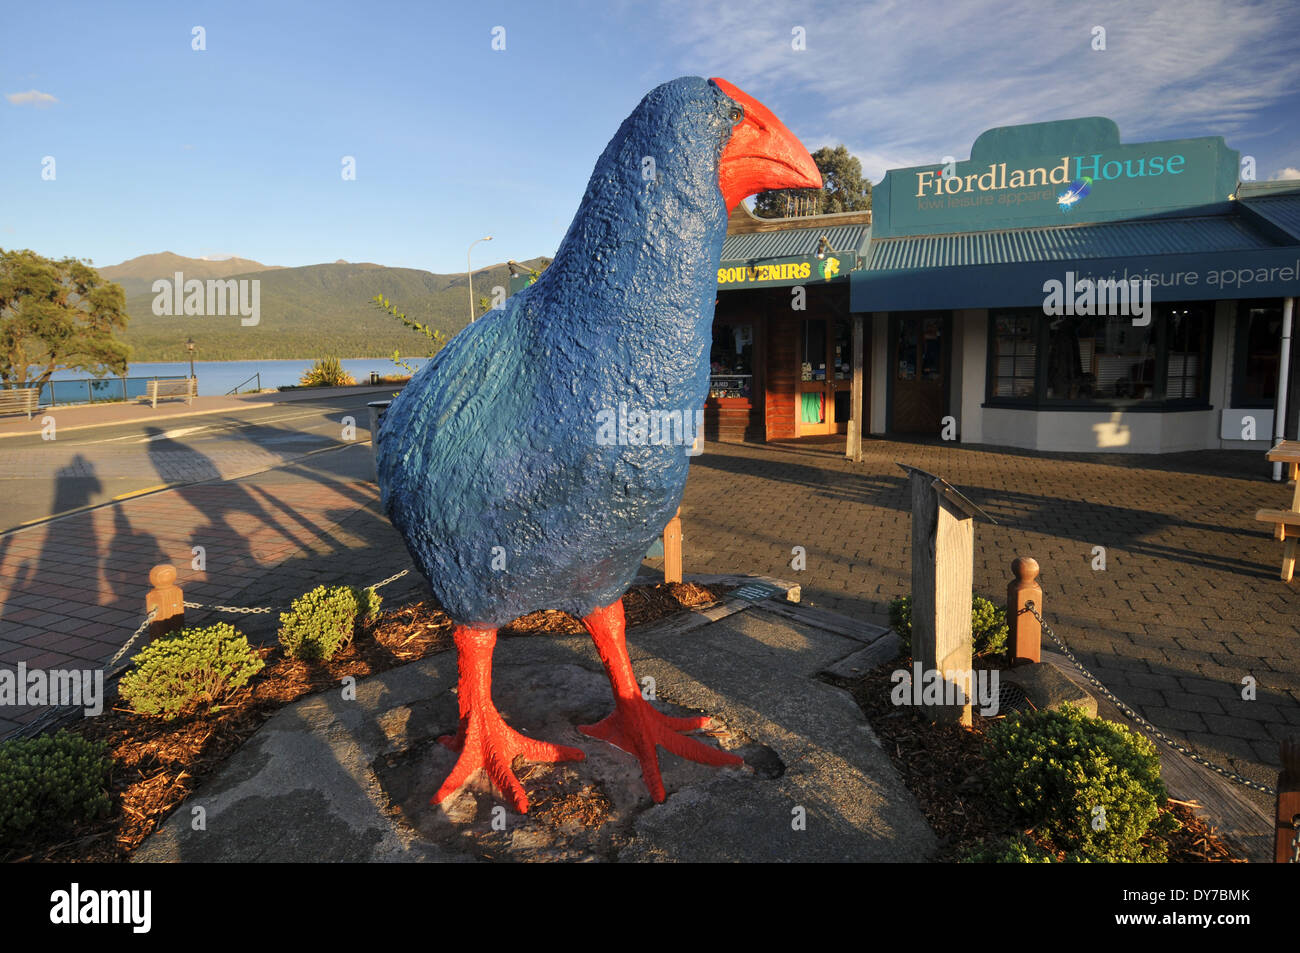 Statue d'une talève sultane ou Pukeko, les populations d'oiseaux de la Nouvelle Zélande, dans les rues de Te Anau, île du Sud, Nouvelle-Zélande Banque D'Images